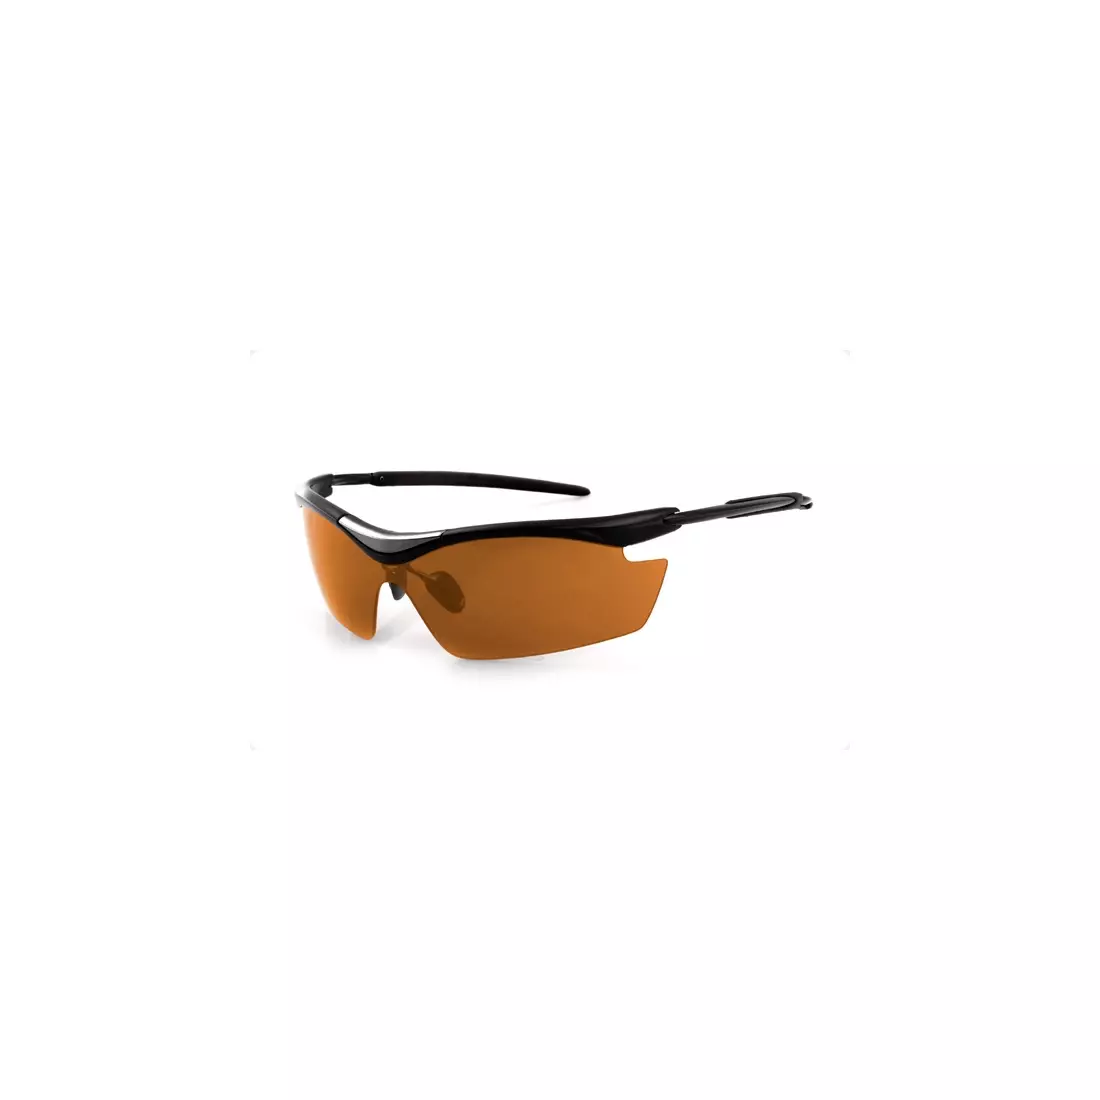 FISCHER - športové okuliare FS-04 - farba: Čierna